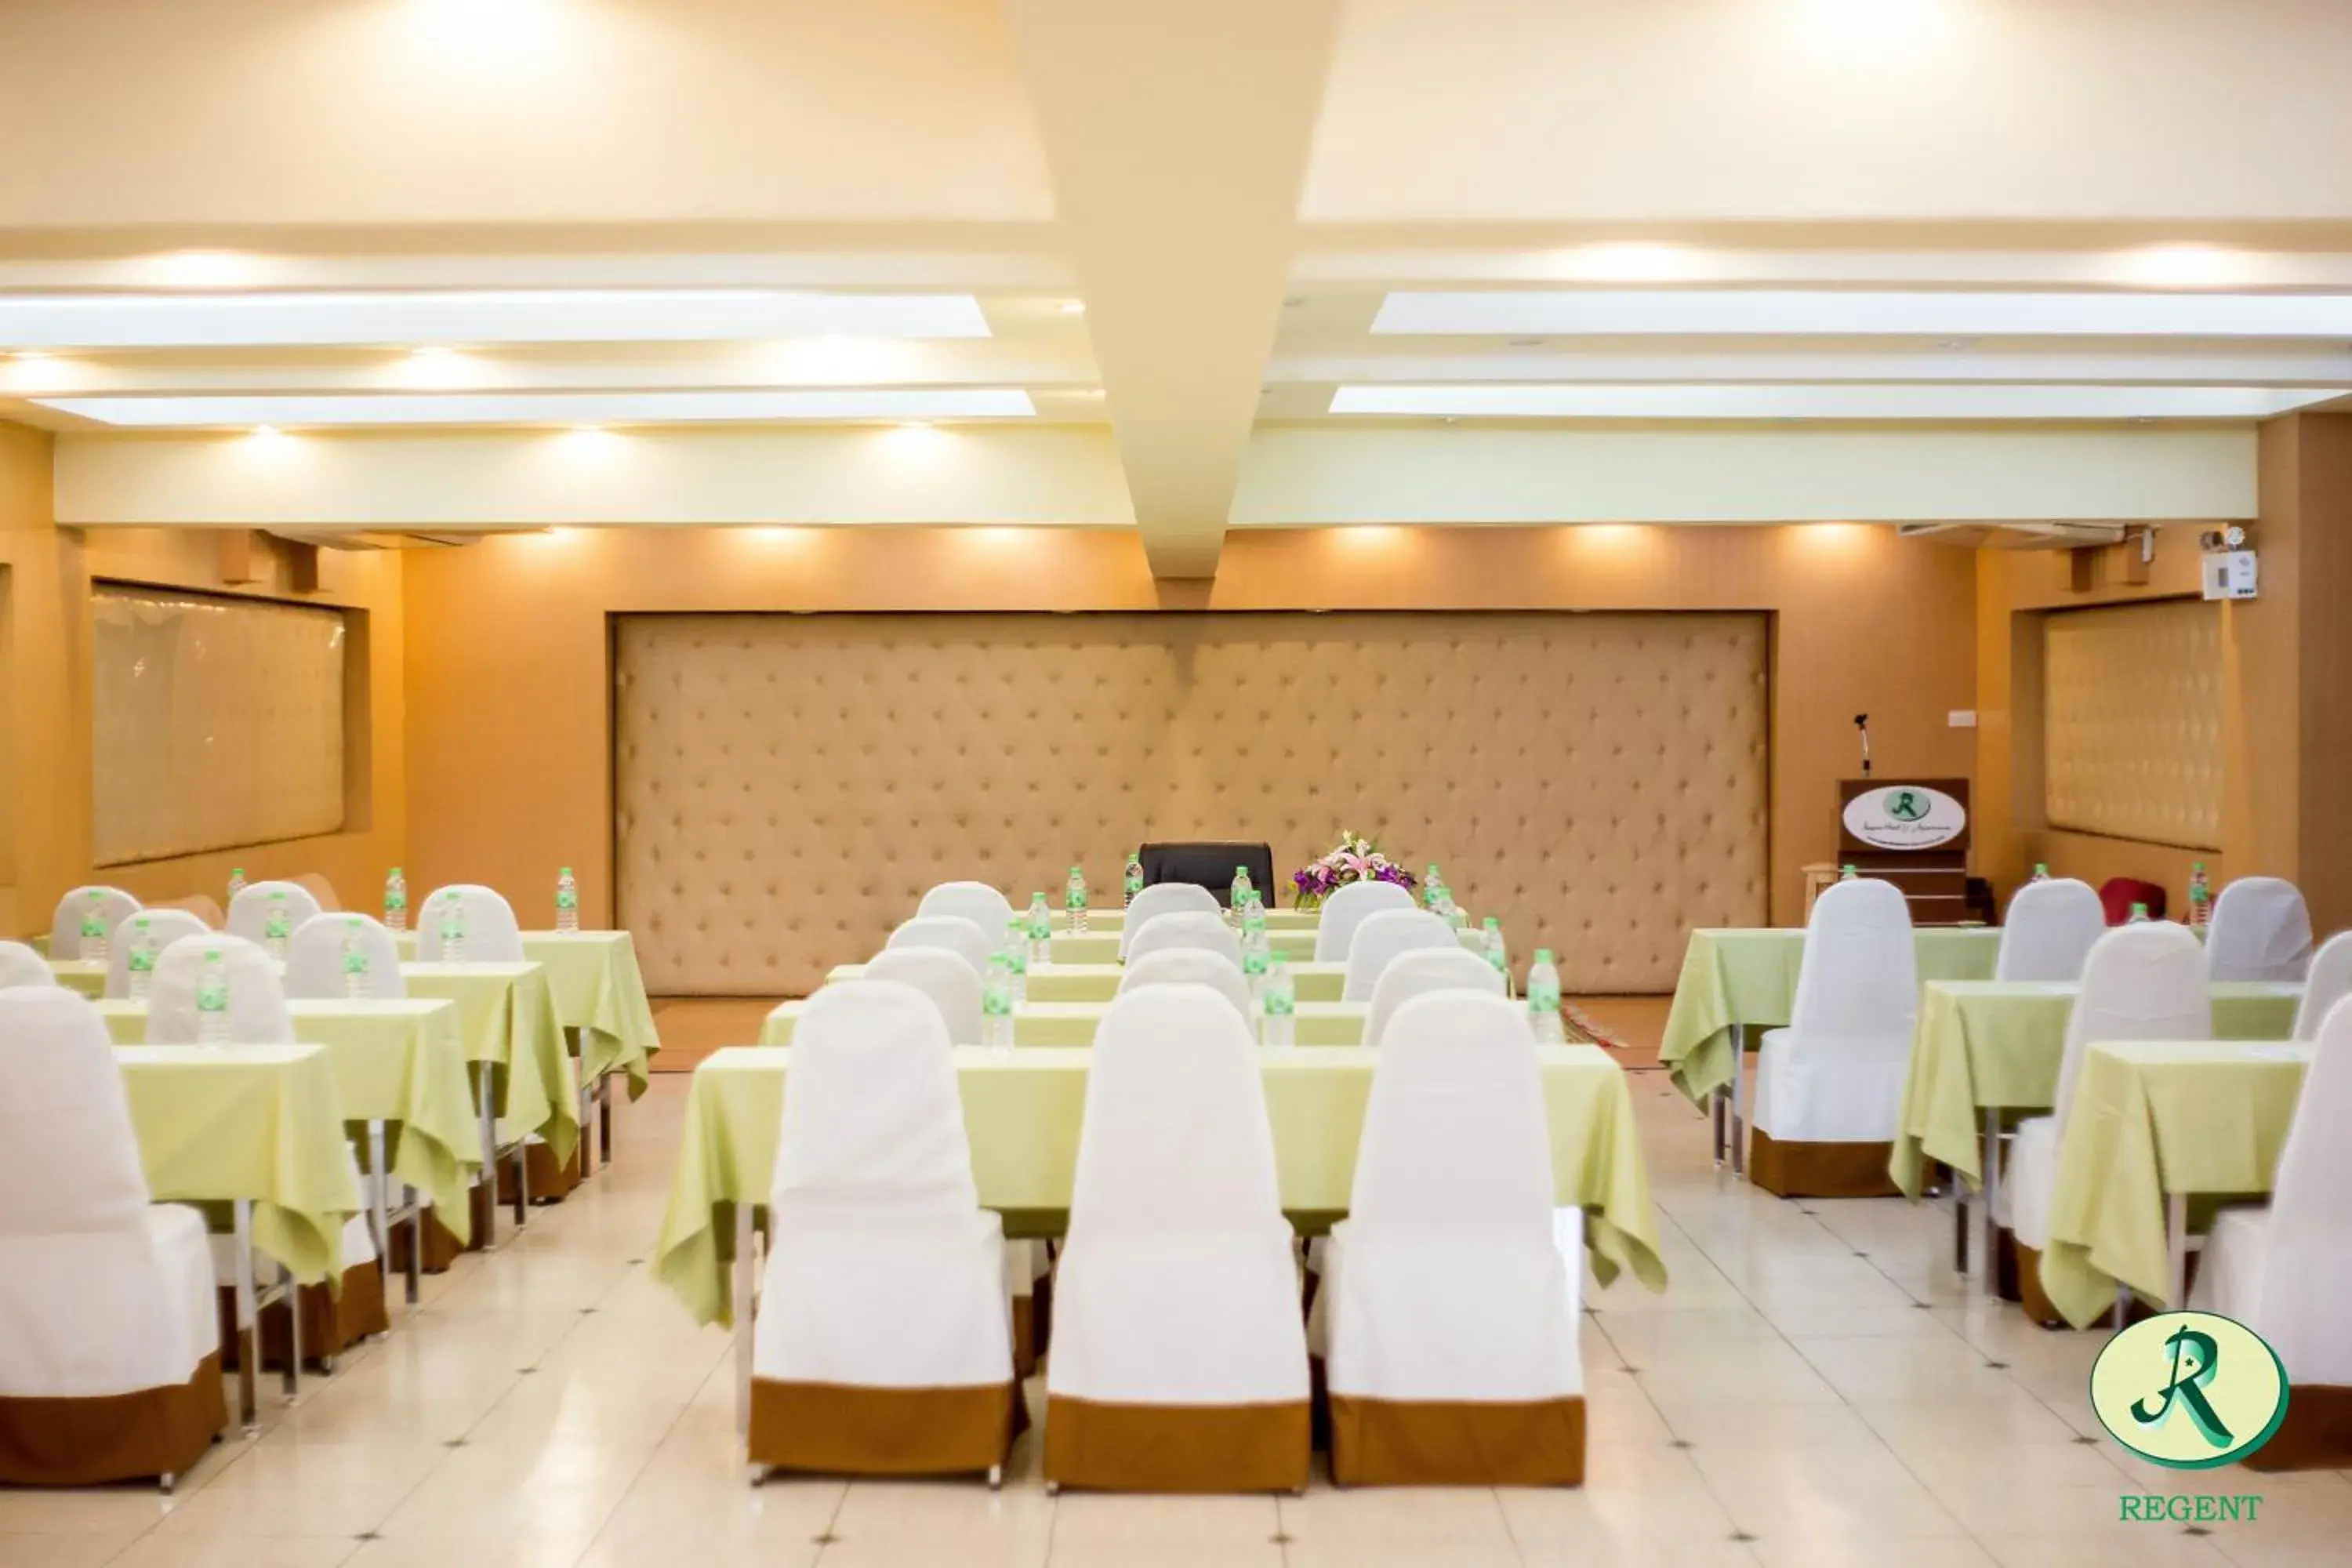 Banquet/Function facilities, Banquet Facilities in Regent Ramkhamhaeng 22